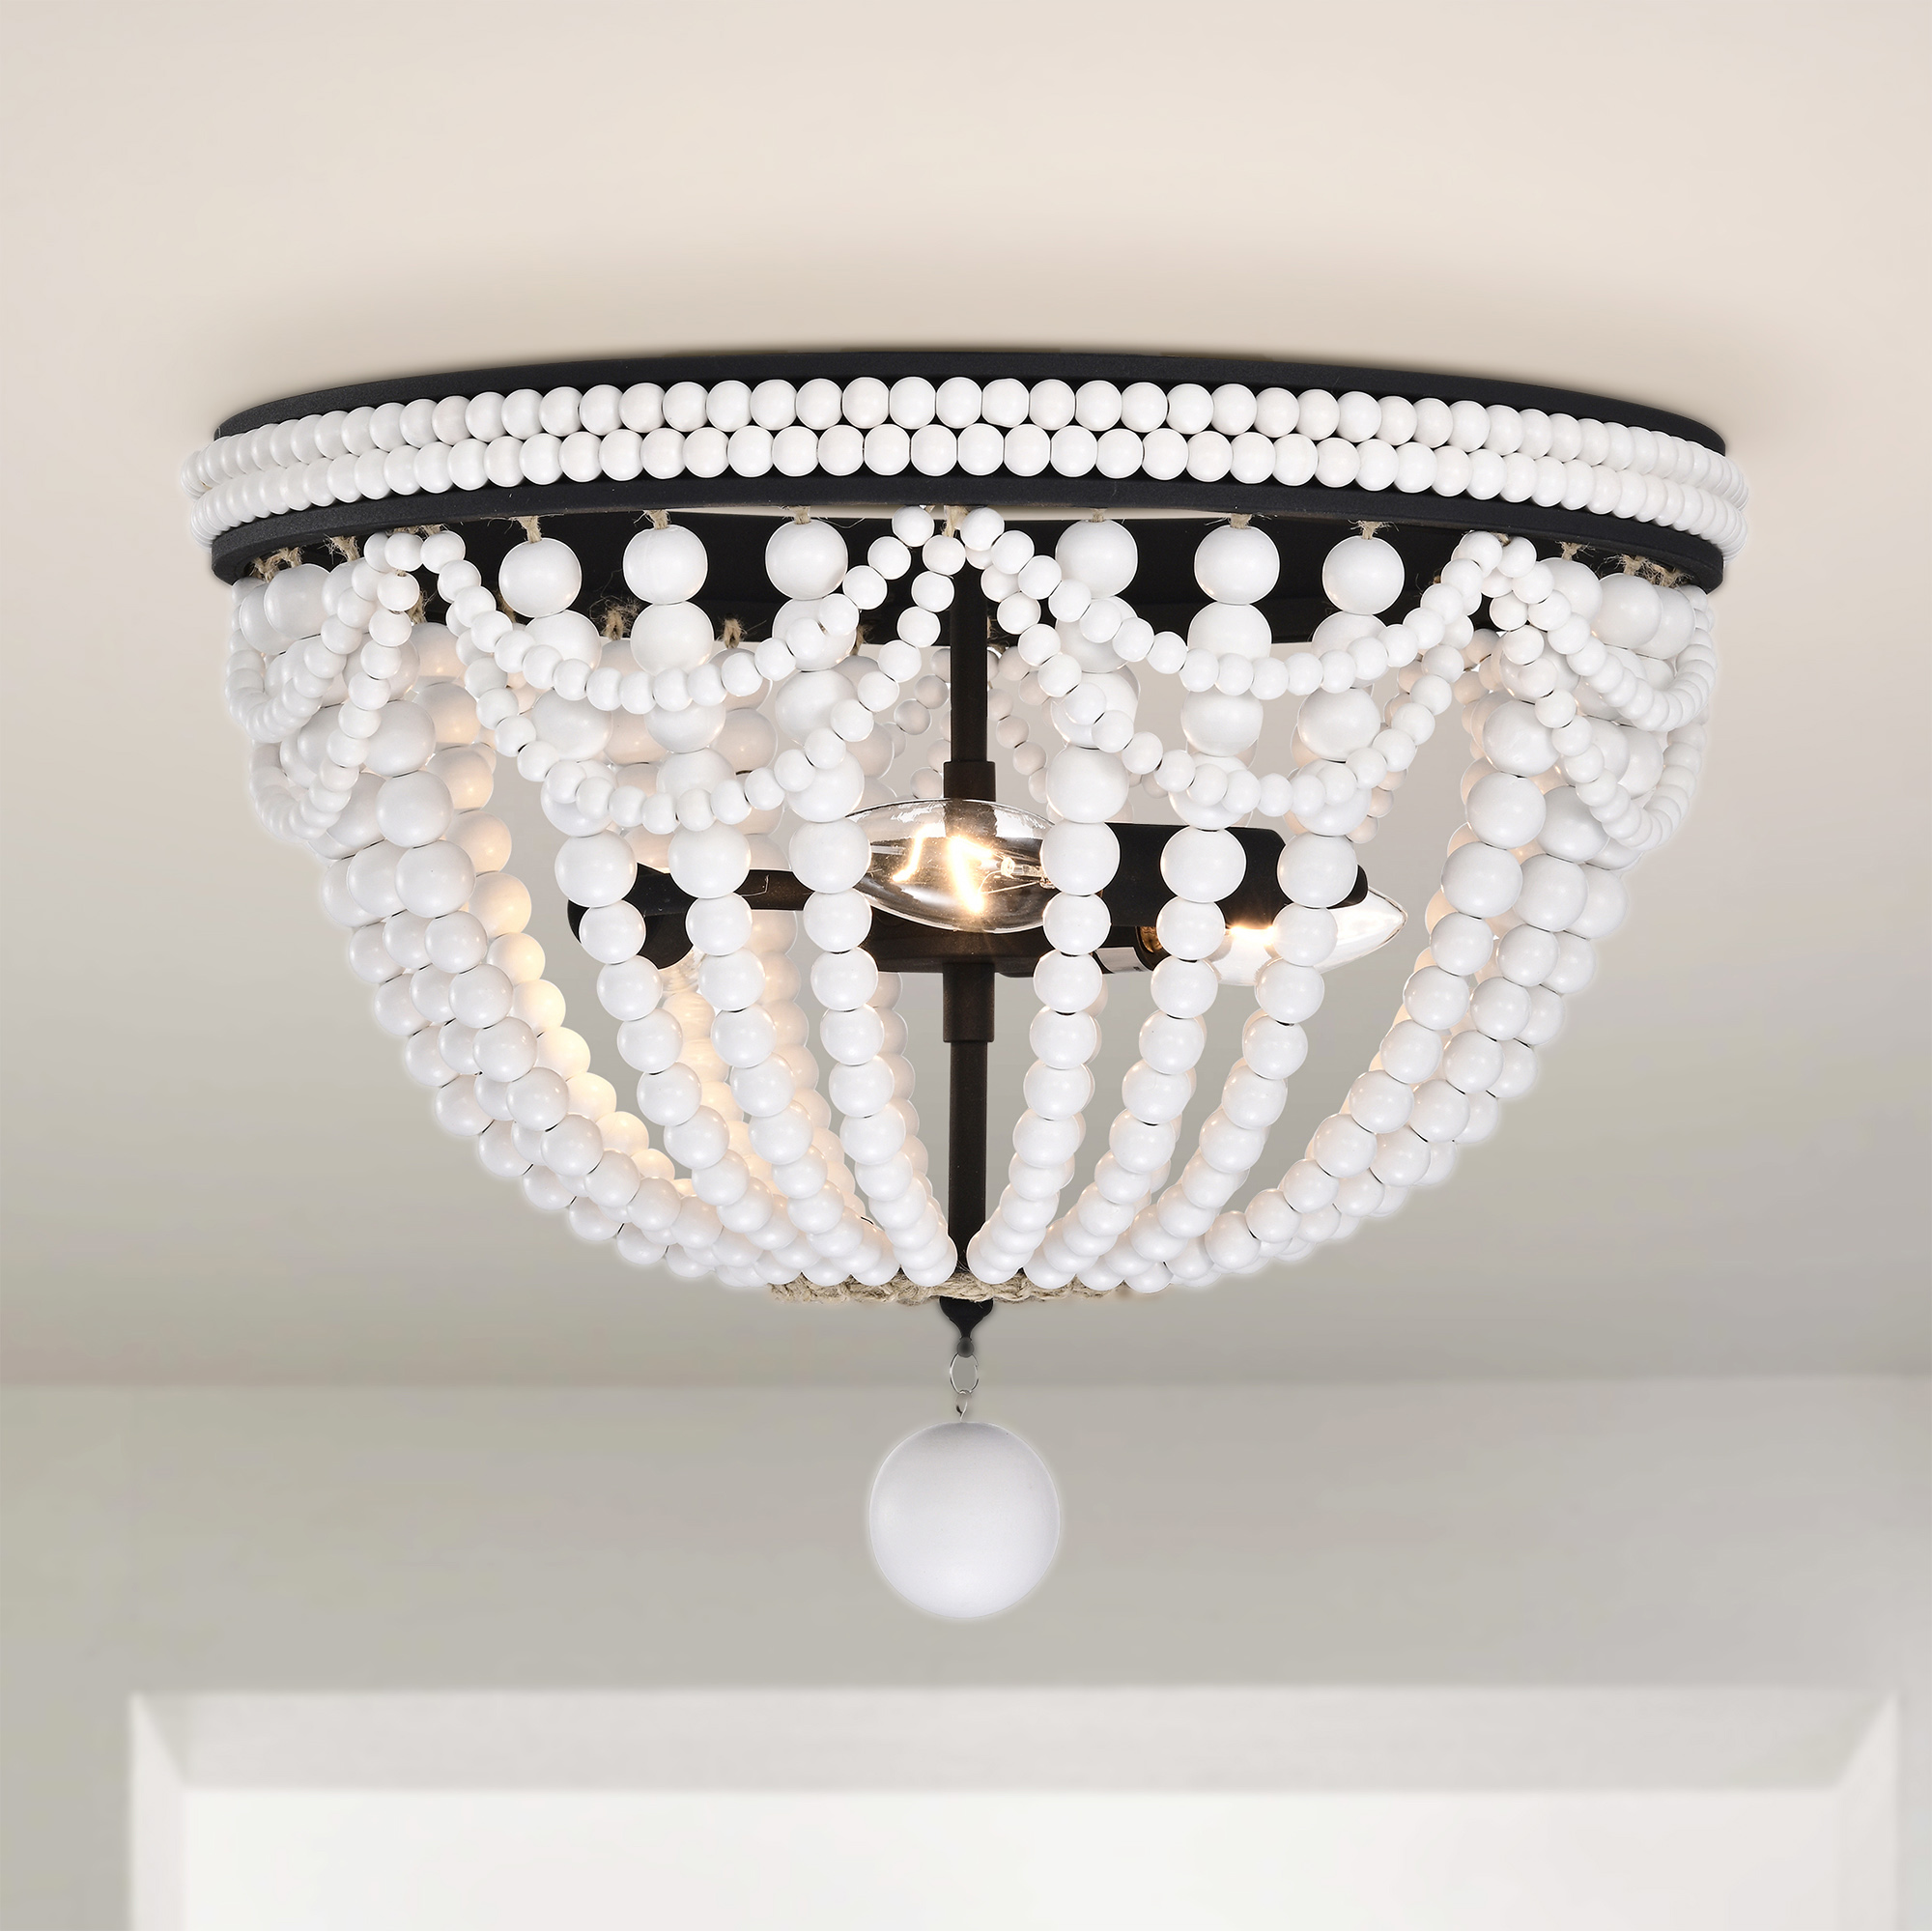 Hudson 16 in. 3-Light Indoor Iron Black and Gloss White Finish Flush Mount Ceiling Light with Light Kit